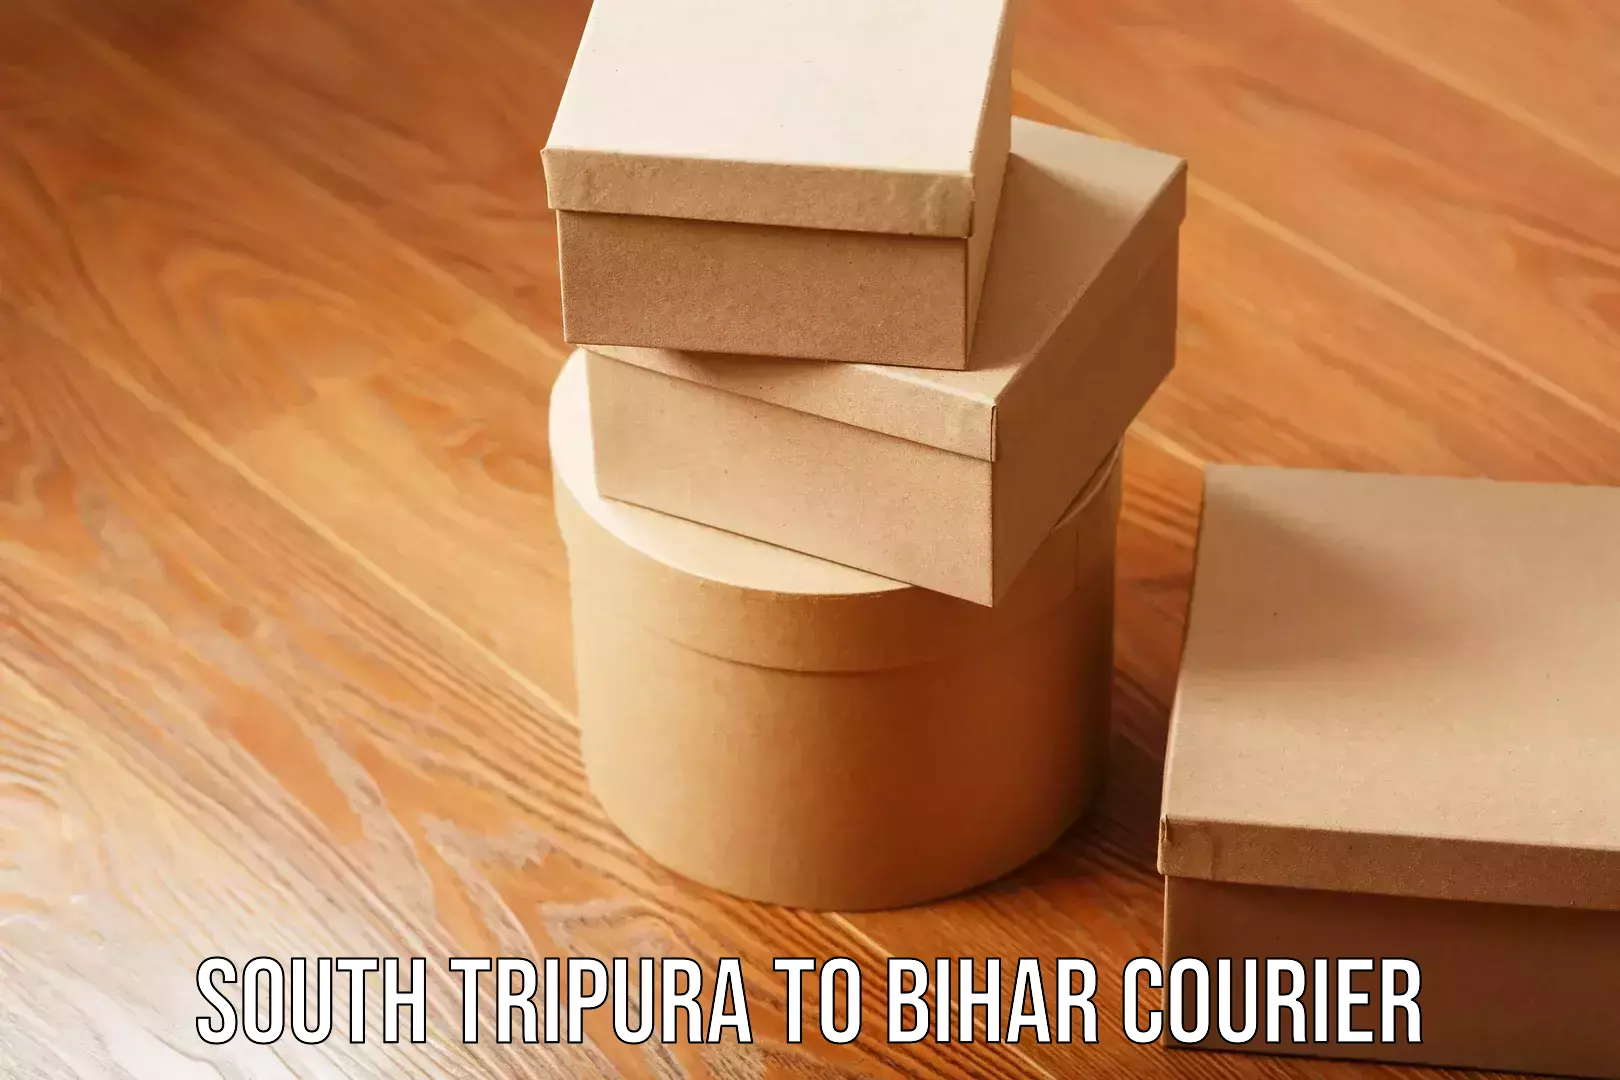 Express shipping South Tripura to Bihar